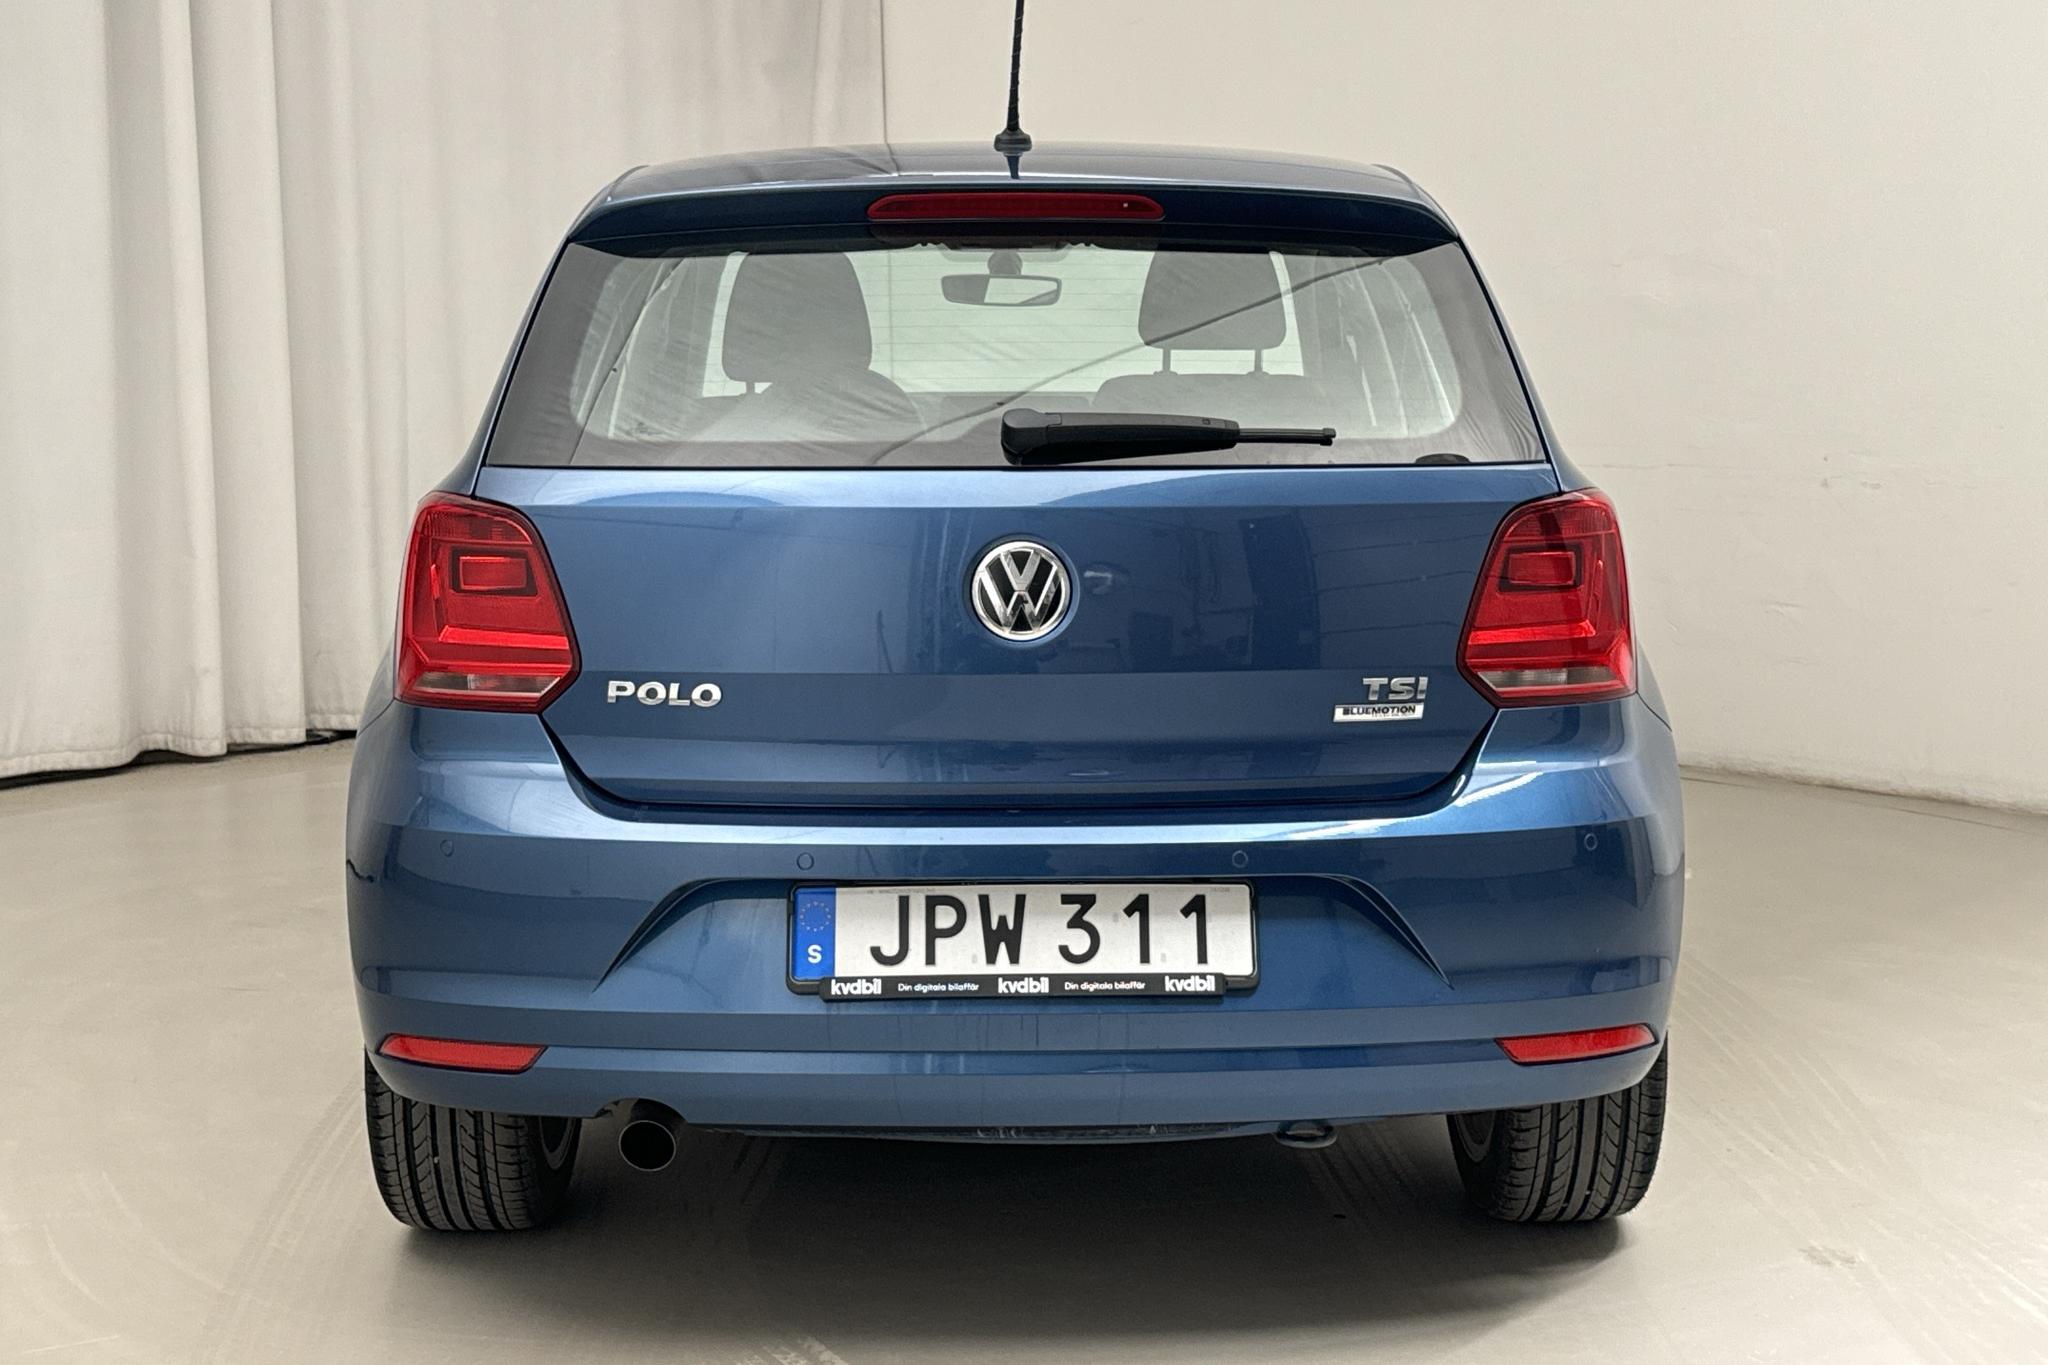 VW Polo 1.2 TSI 5dr (90hk) - 10 544 mil - Manuell - blå - 2015